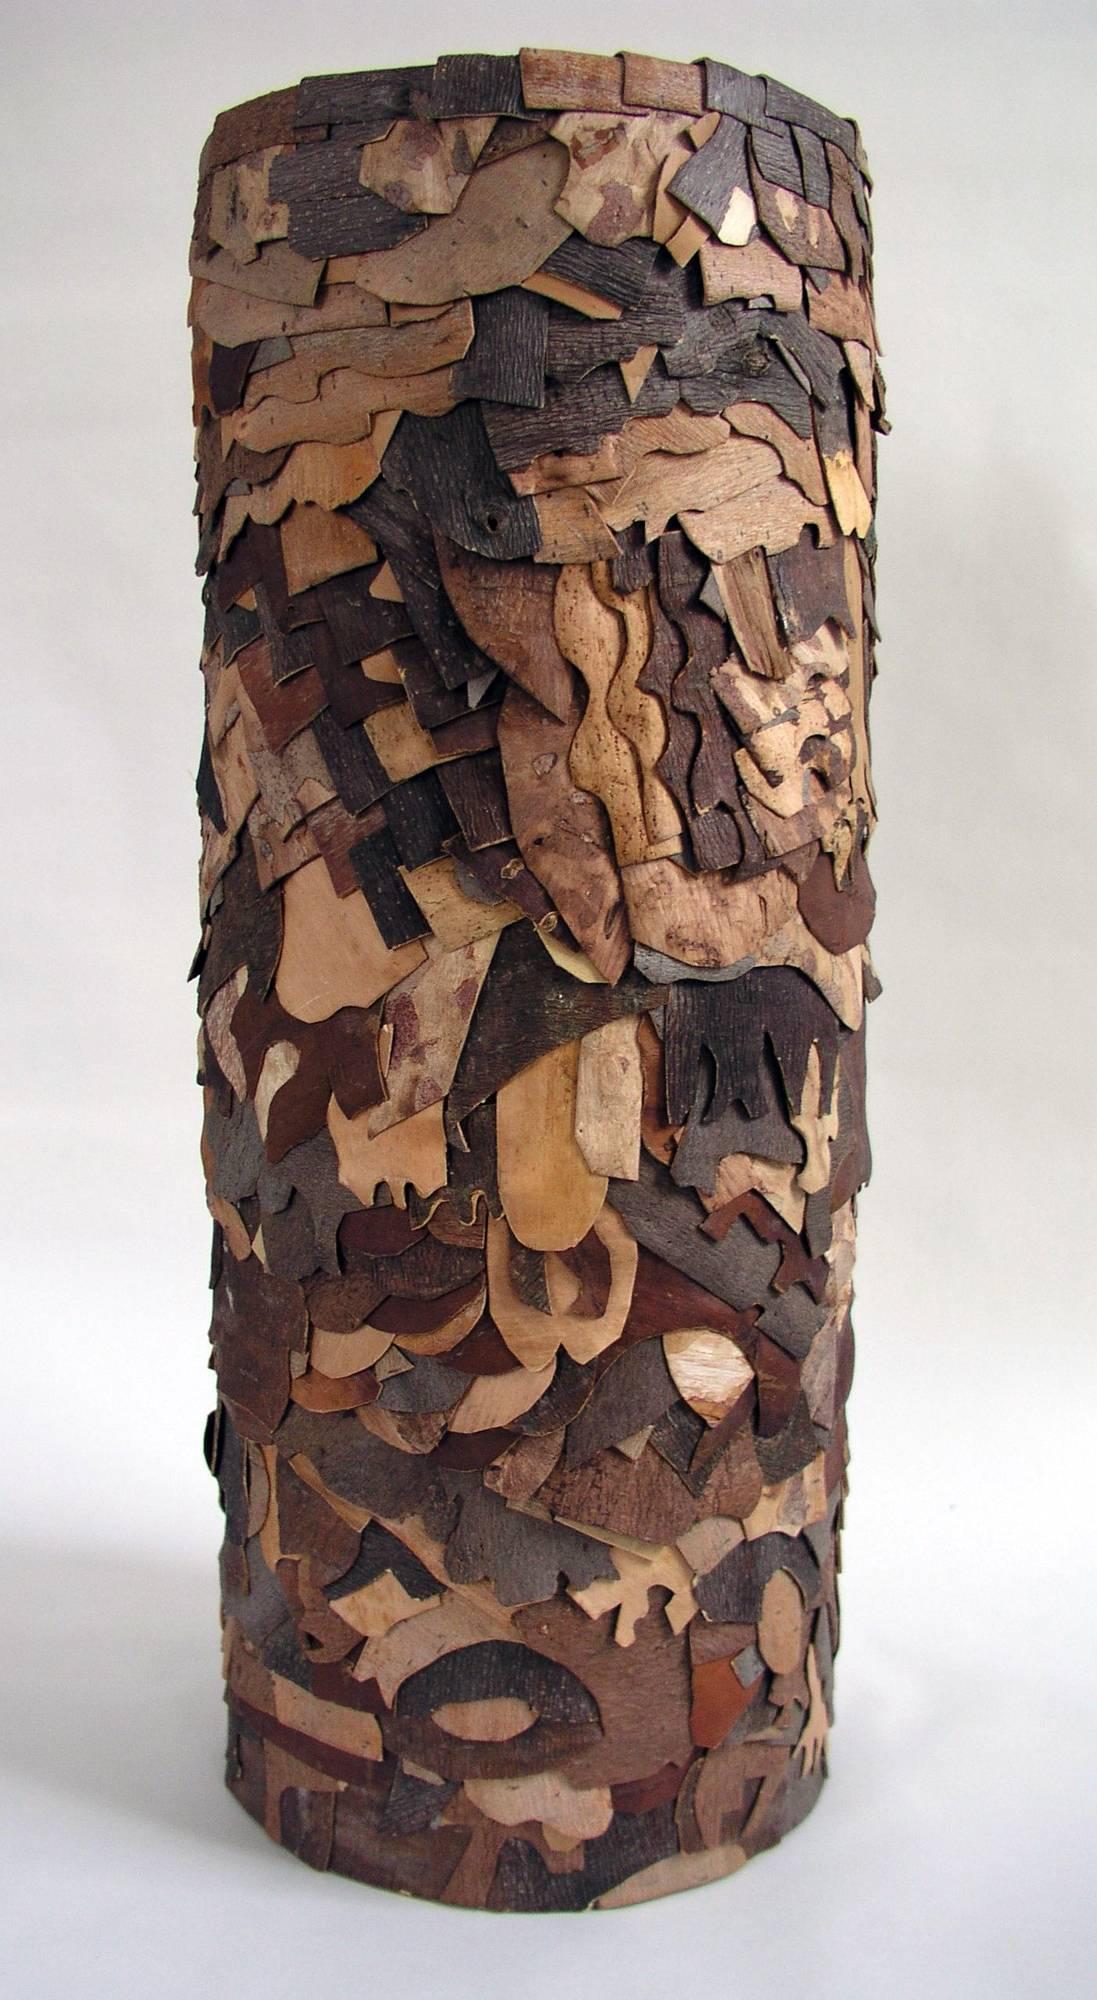 John McQueen Still-Life Sculpture - "Glyph", Wood and Bark Sculpture 